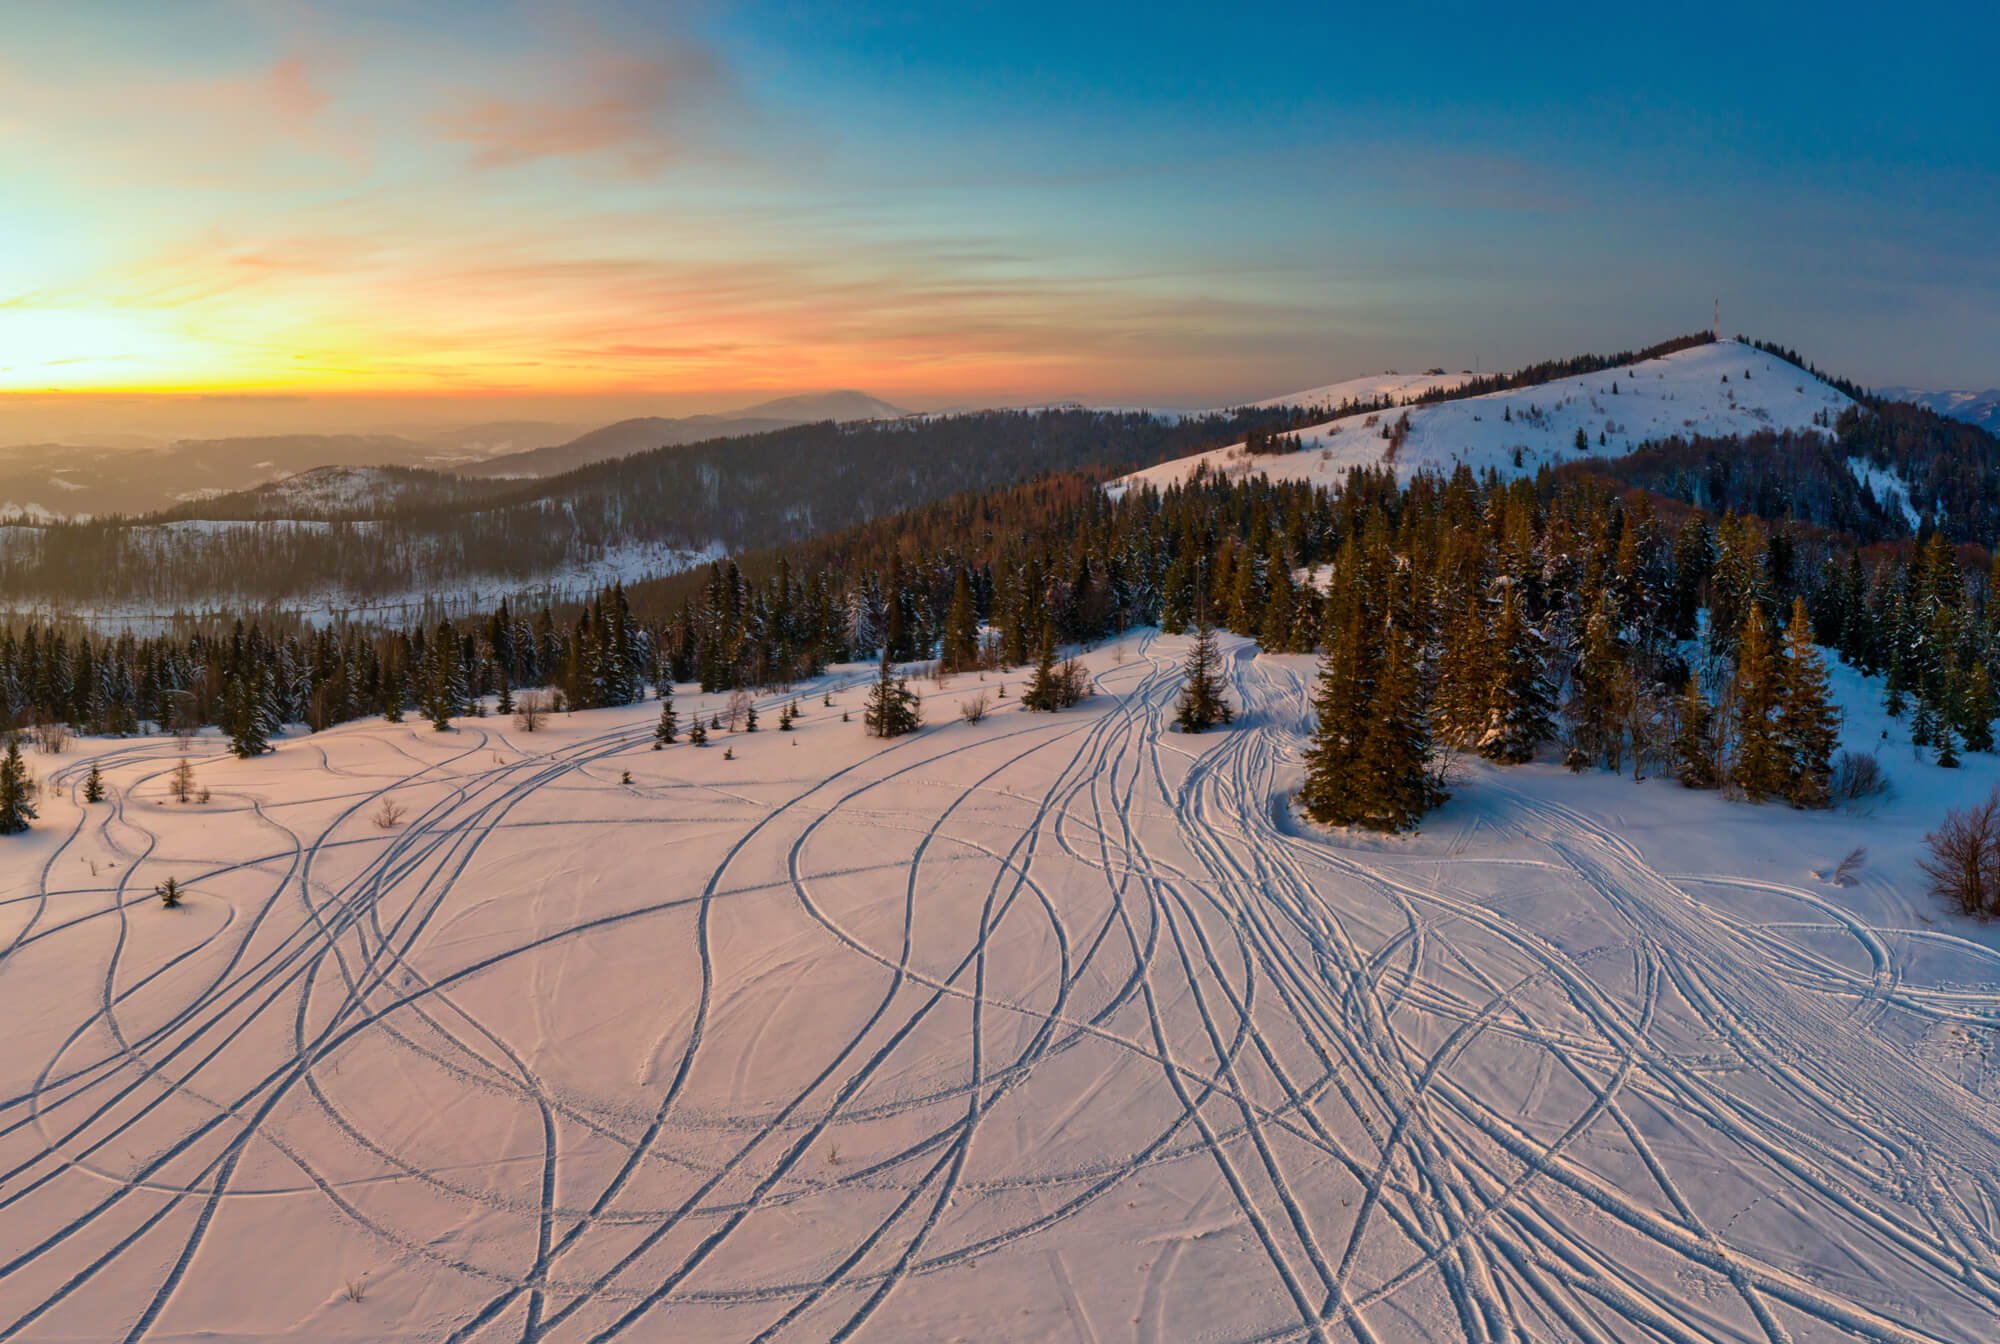 Zăpadă proaspătă brăzdată de piste arcuite ale schiorilor